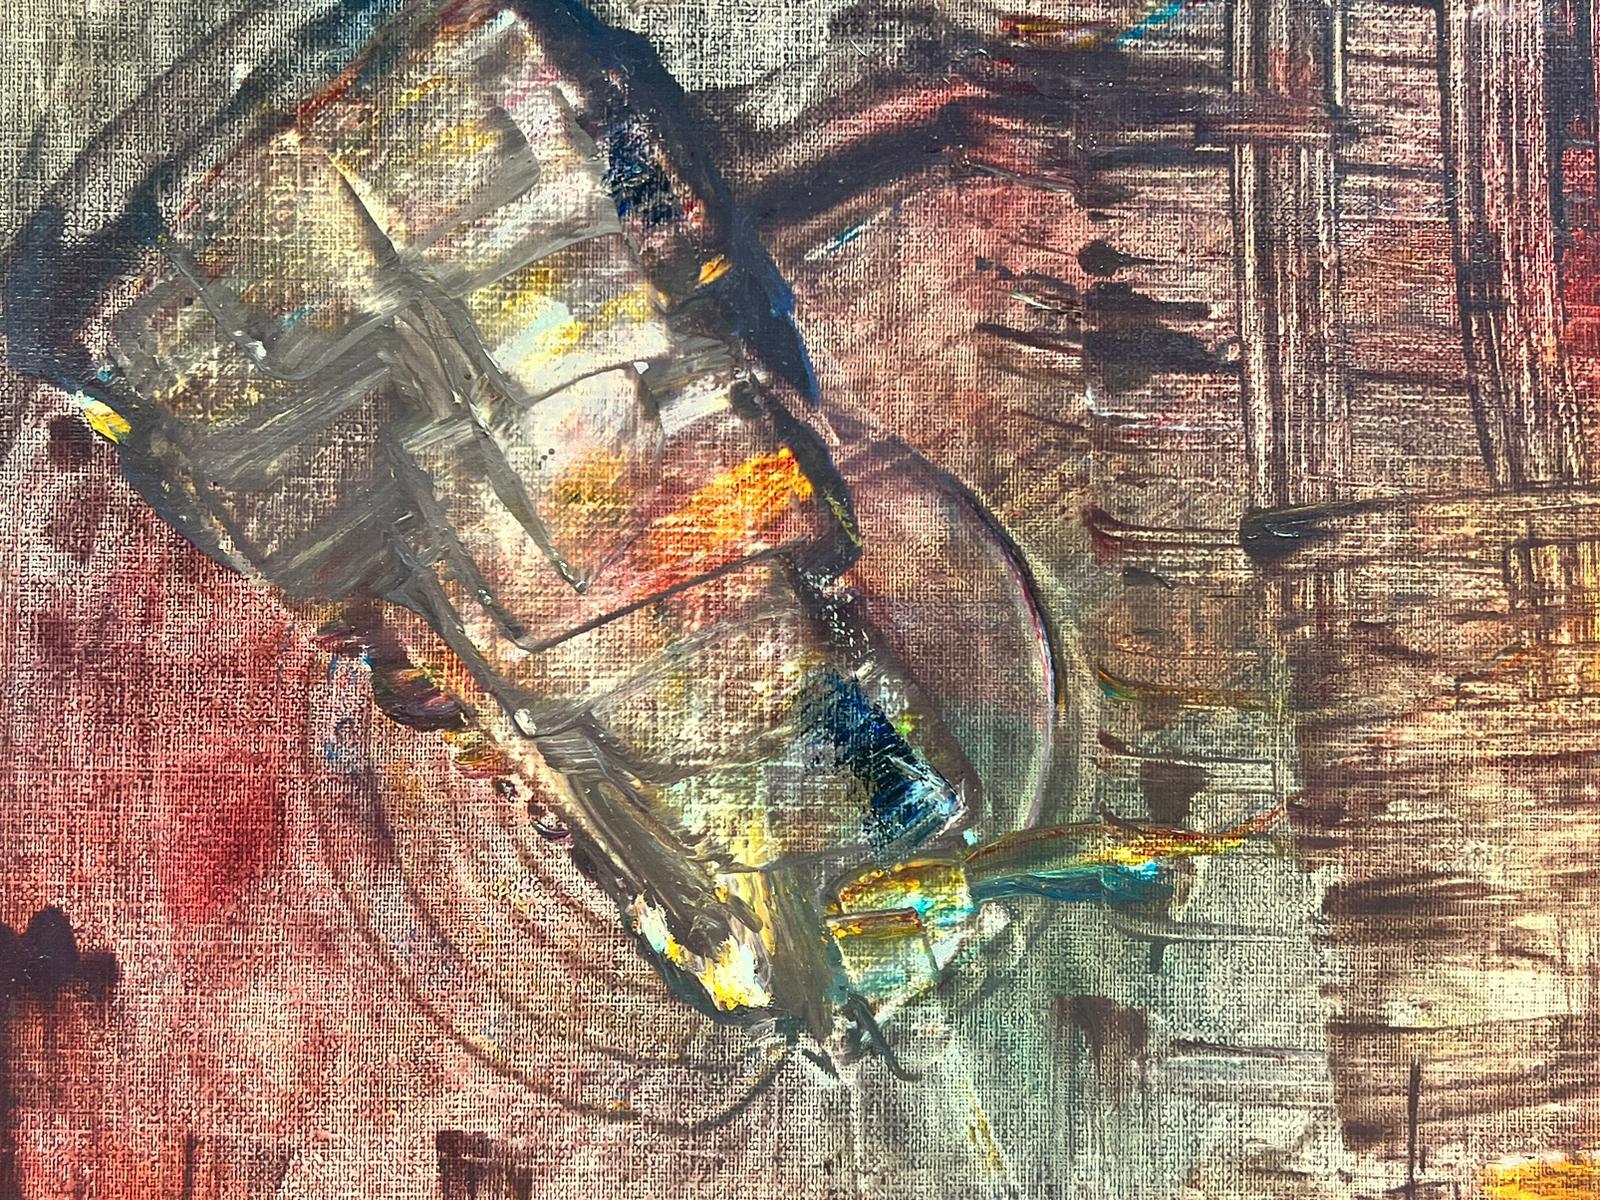 Große 1990er Jahre Französisch Expressionist abstrakte Malerei Blurs von Farben & Linie Formen (Abstrakter Expressionismus), Painting, von French School